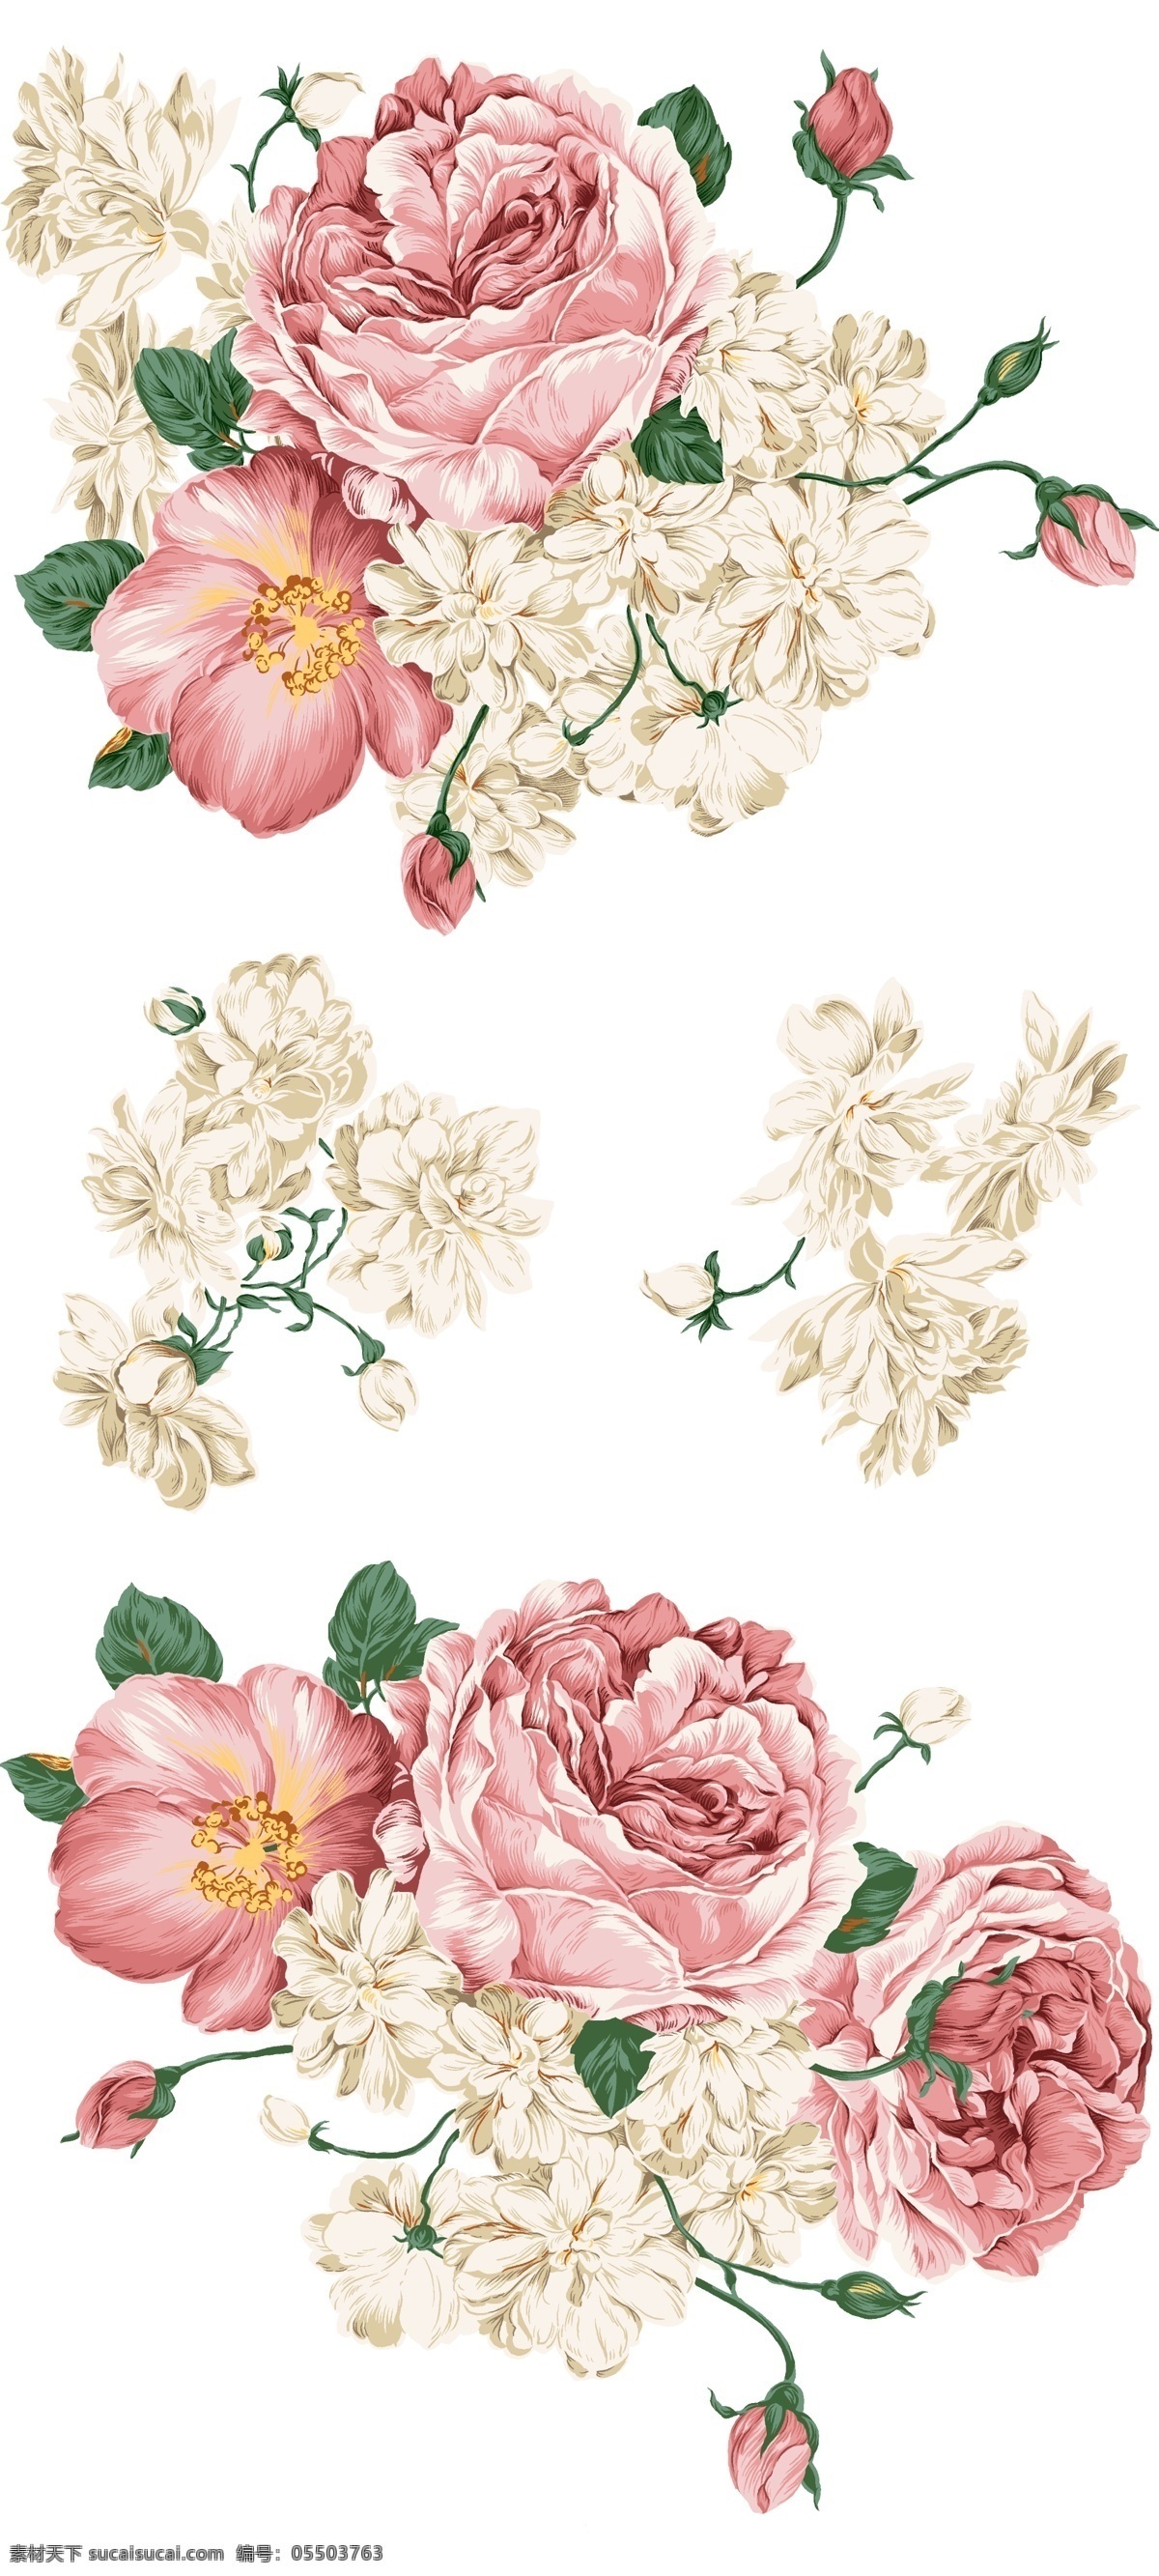 精美 牡丹花 分层 精美牡丹花 花 花朵 粉红牡丹 白牡丹 服饰素材 精致素材 海报素材 设计素材 花朵素材